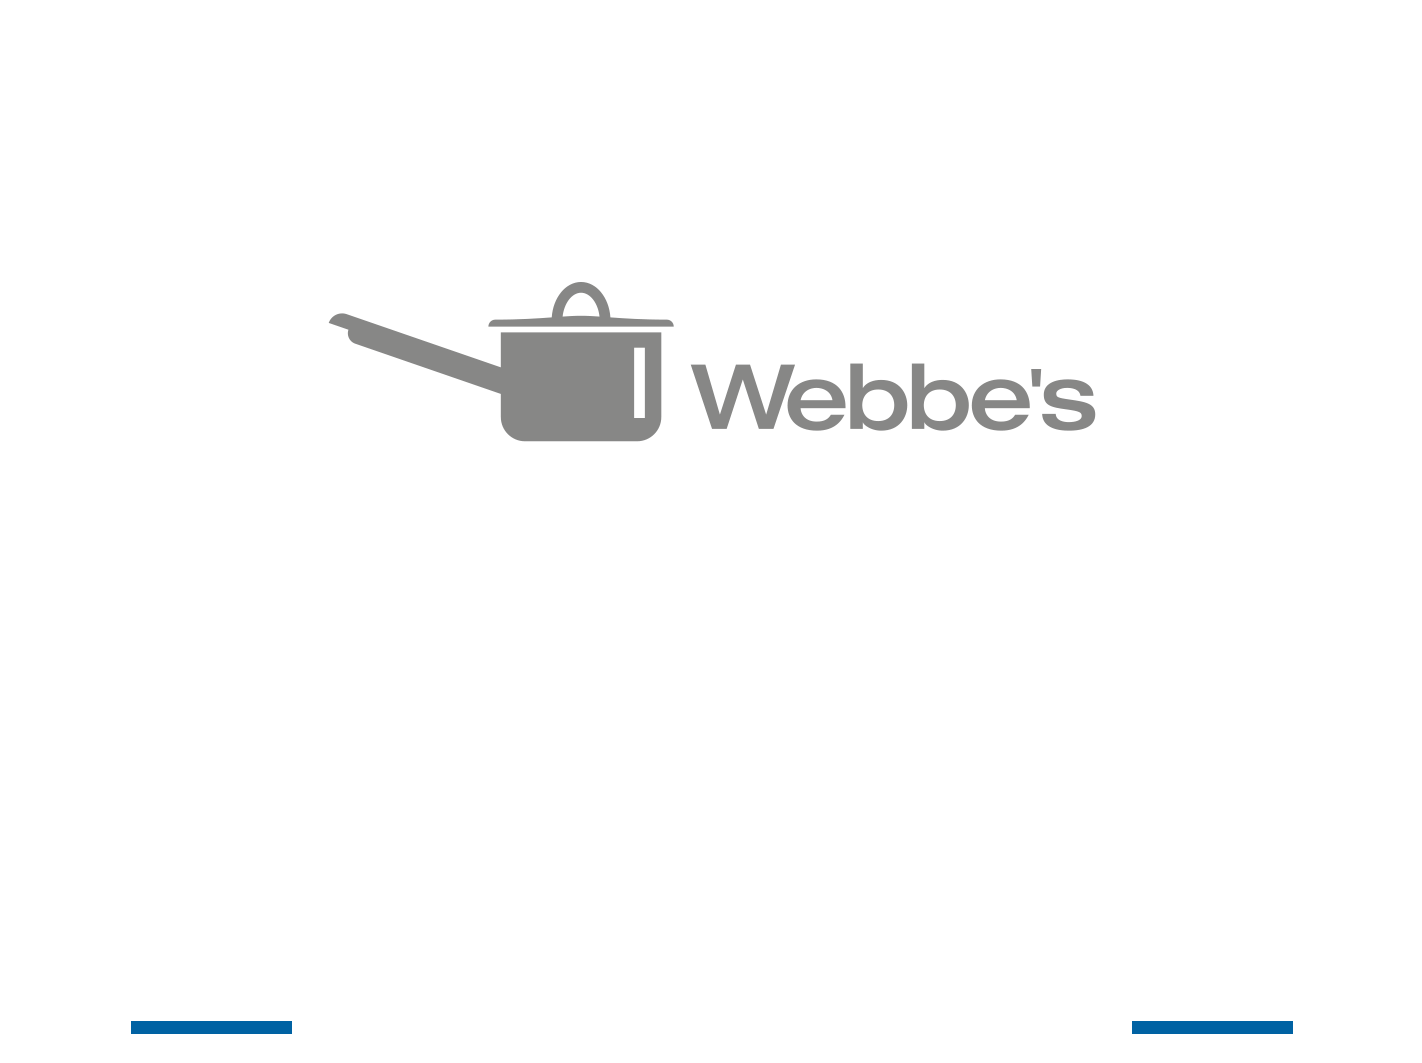 Webbe's Cookery School